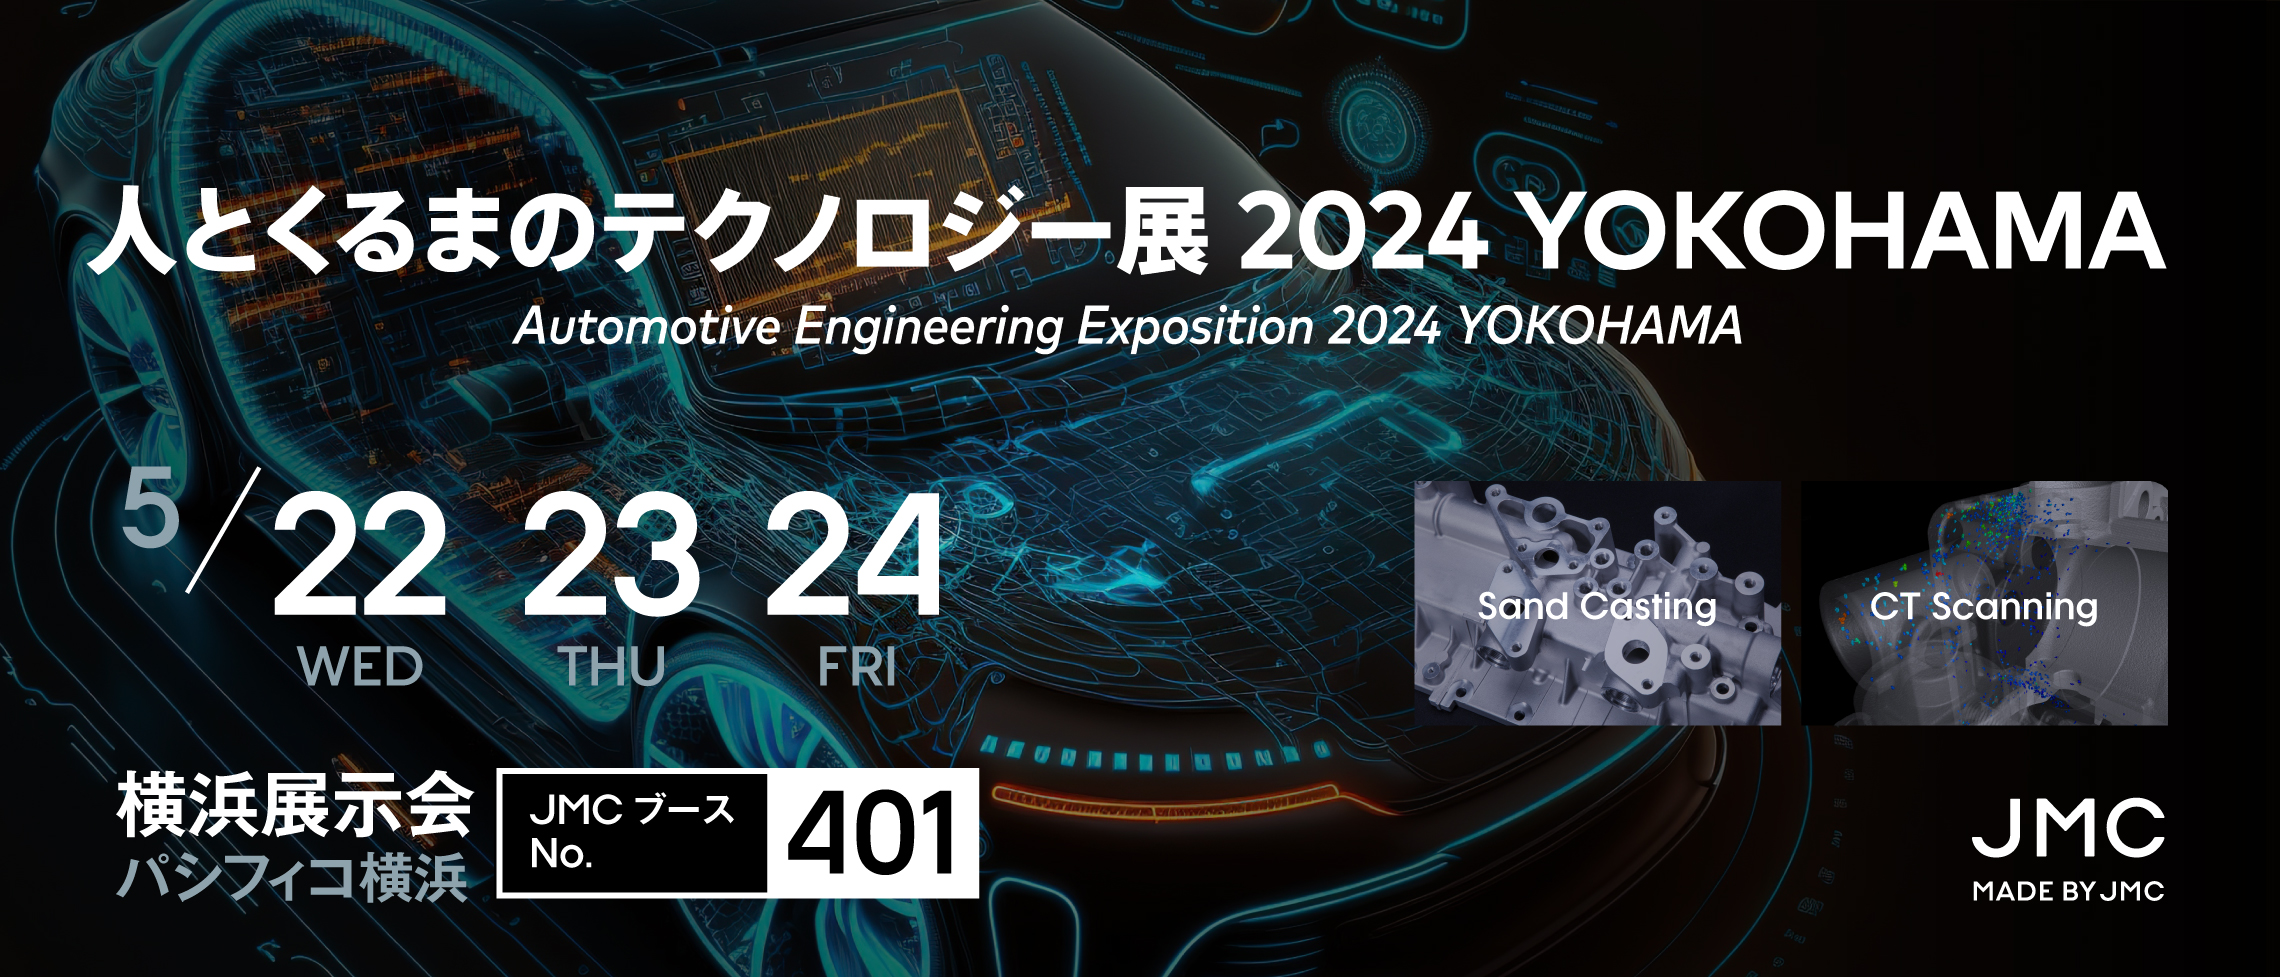 人とくるまのテクノロジー展2024 YOKOHAMA